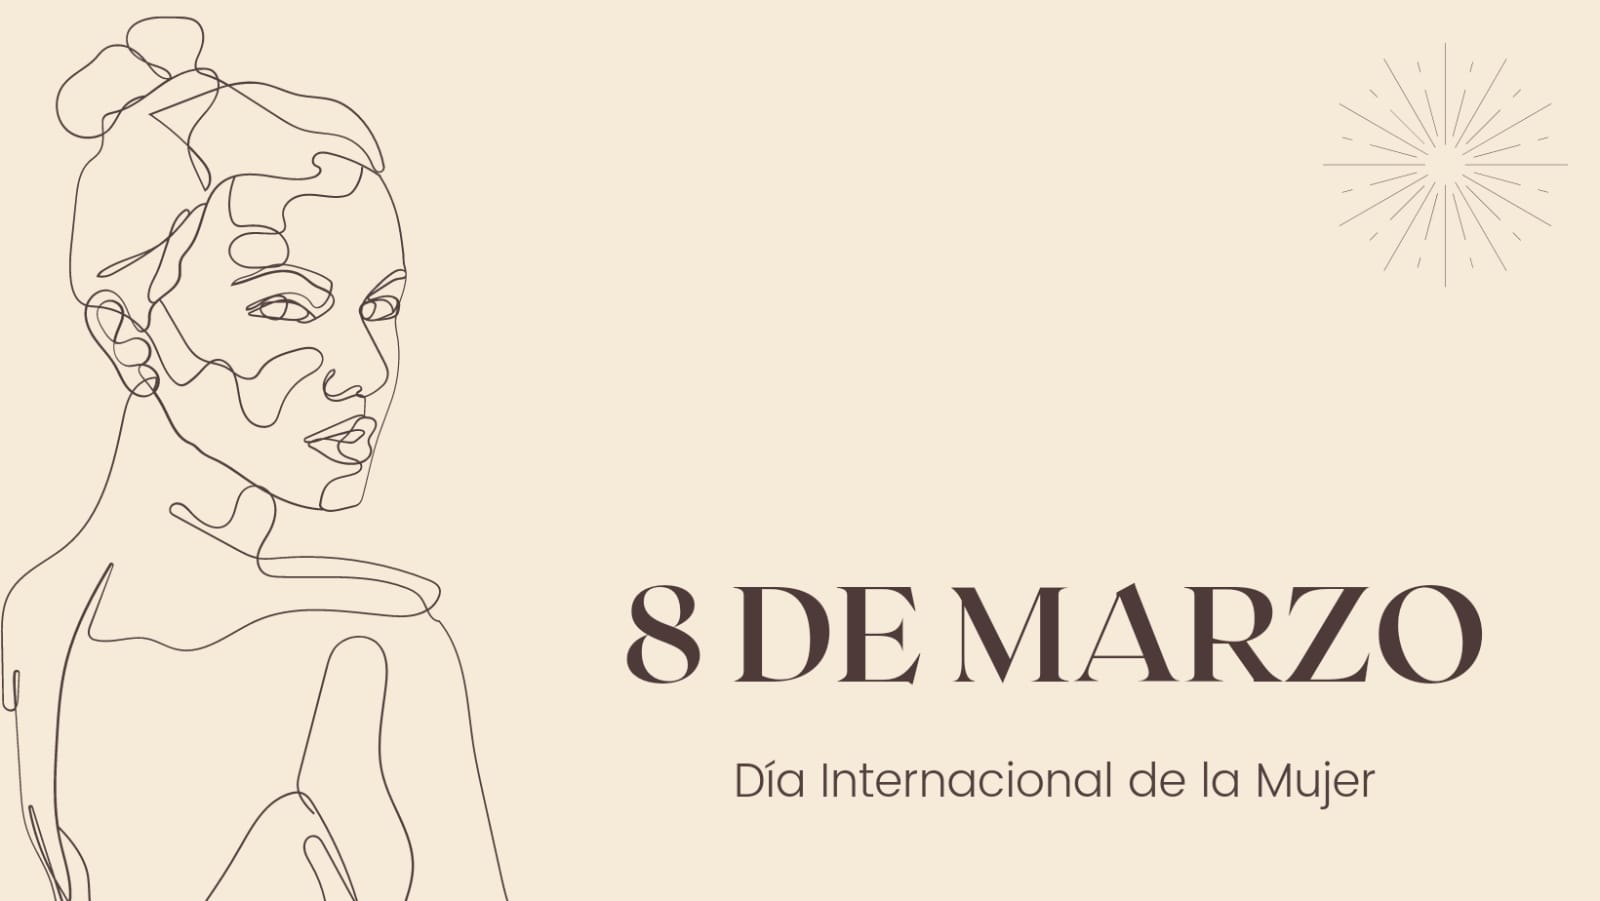 8 de marzo: Dia Internacional de la Mujer.